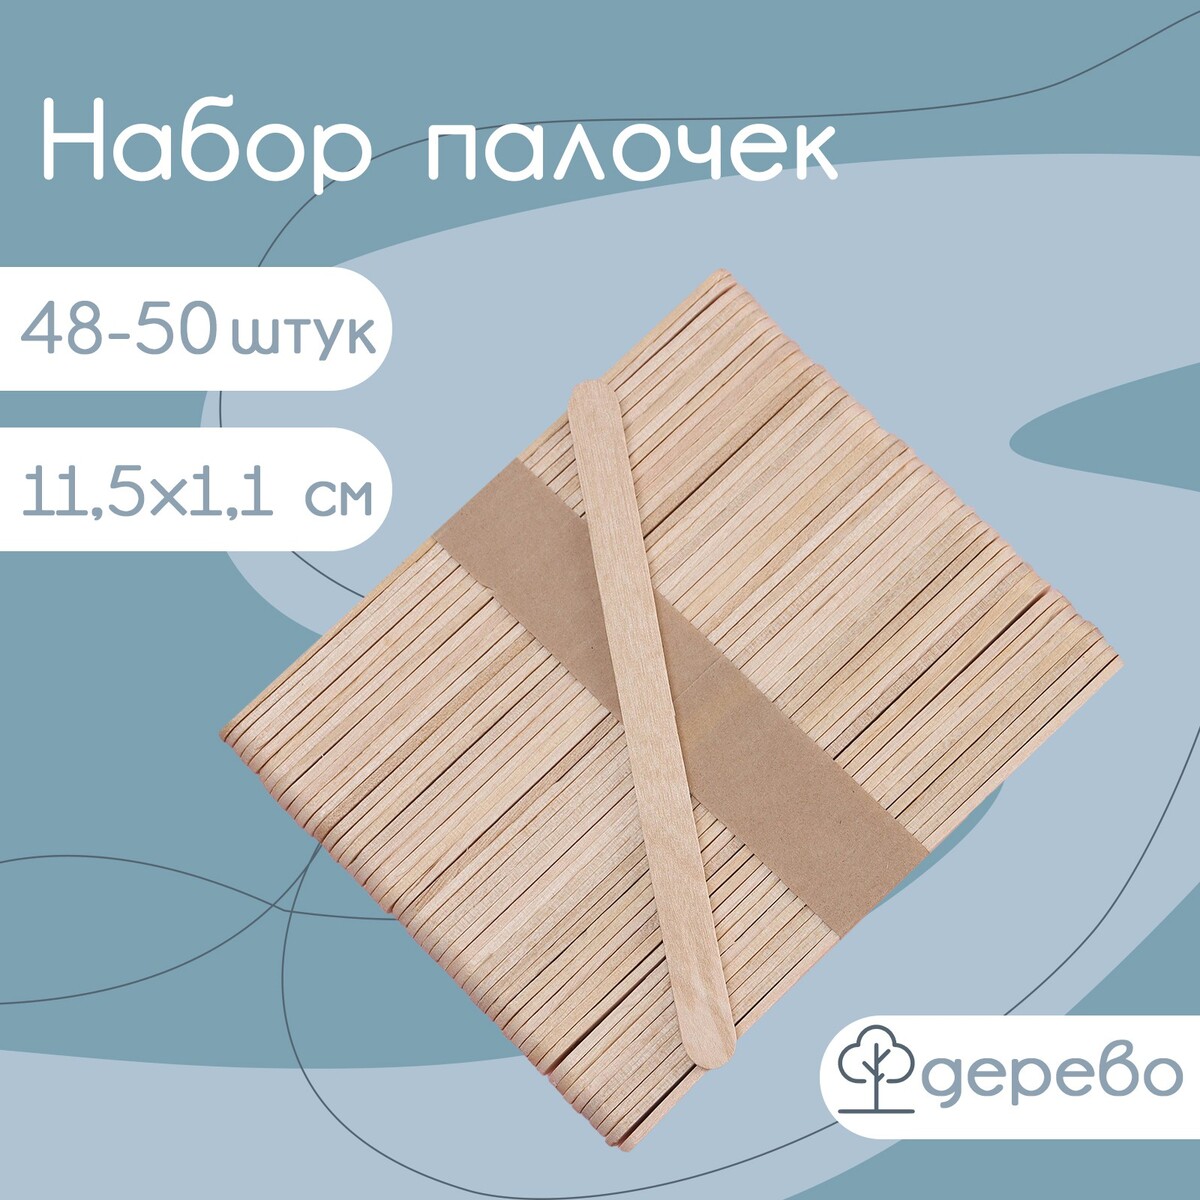 Набор деревянных палочек для мороженого, 11,5×1,1 см, 48-50 шт набор теней для коррекции бровей true